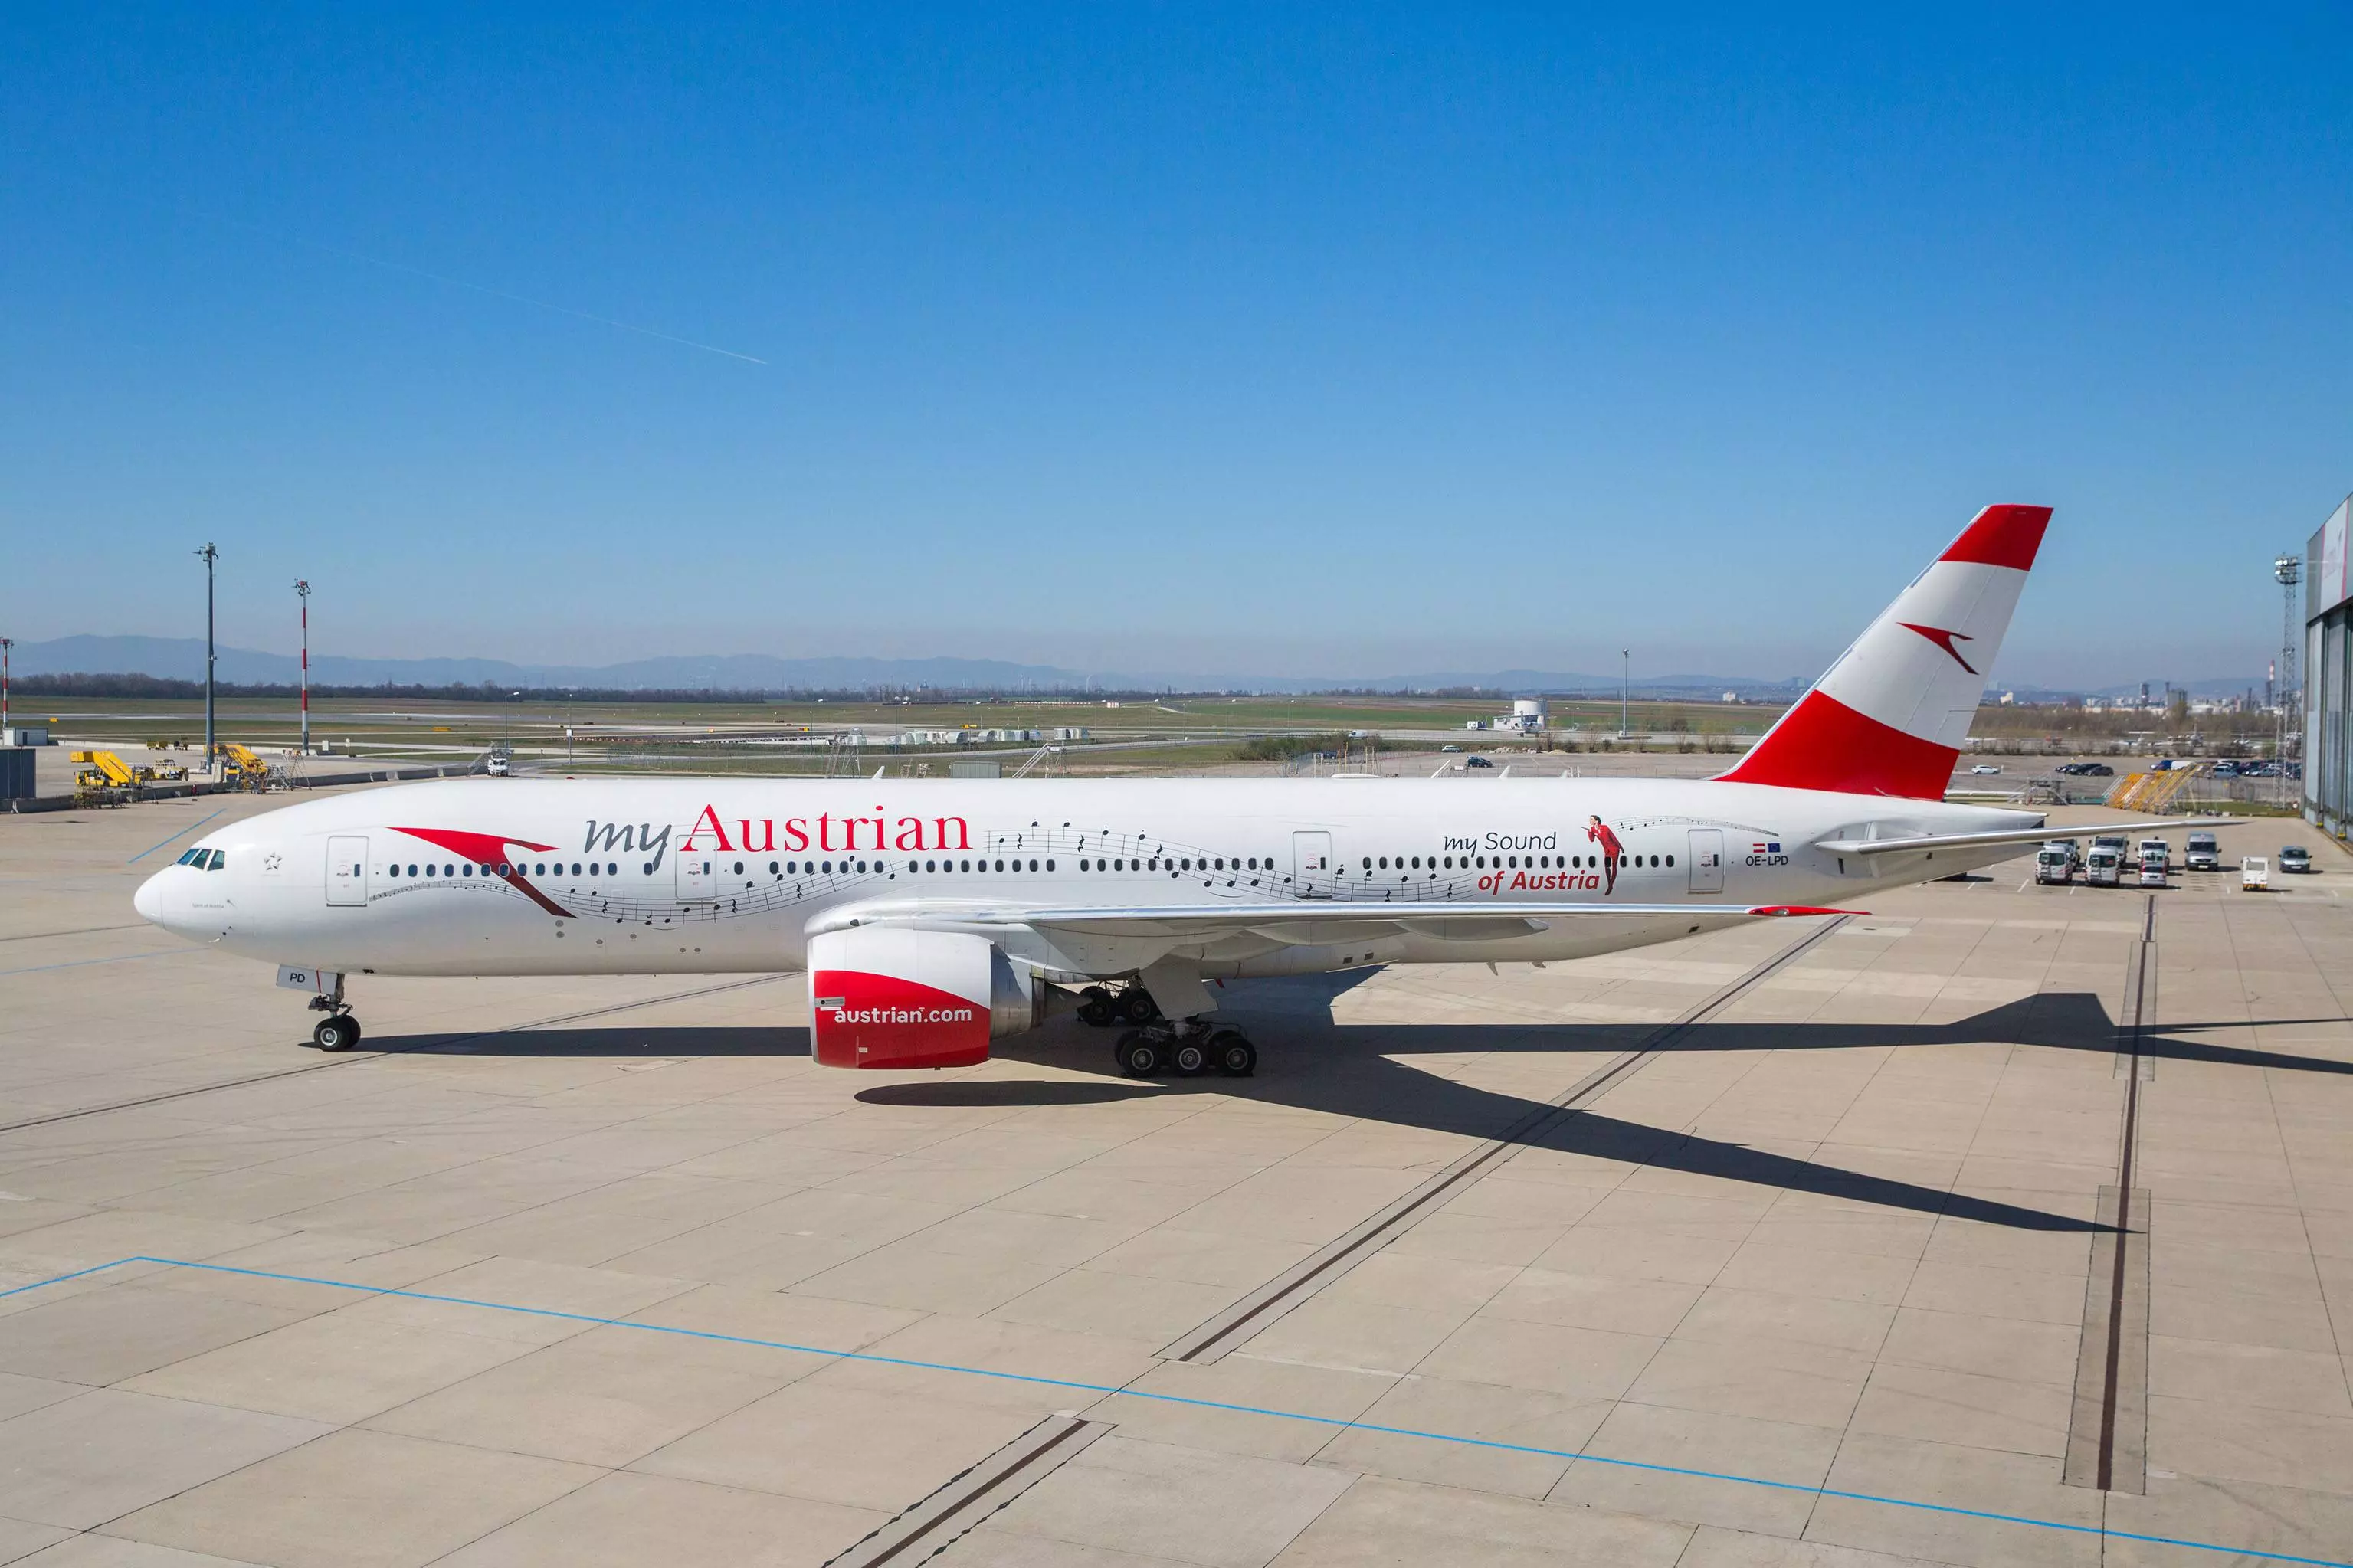 Австрийские авиалинии (austrian airlines): официальный сайт на русском языке, телефон, онлайн регистрация